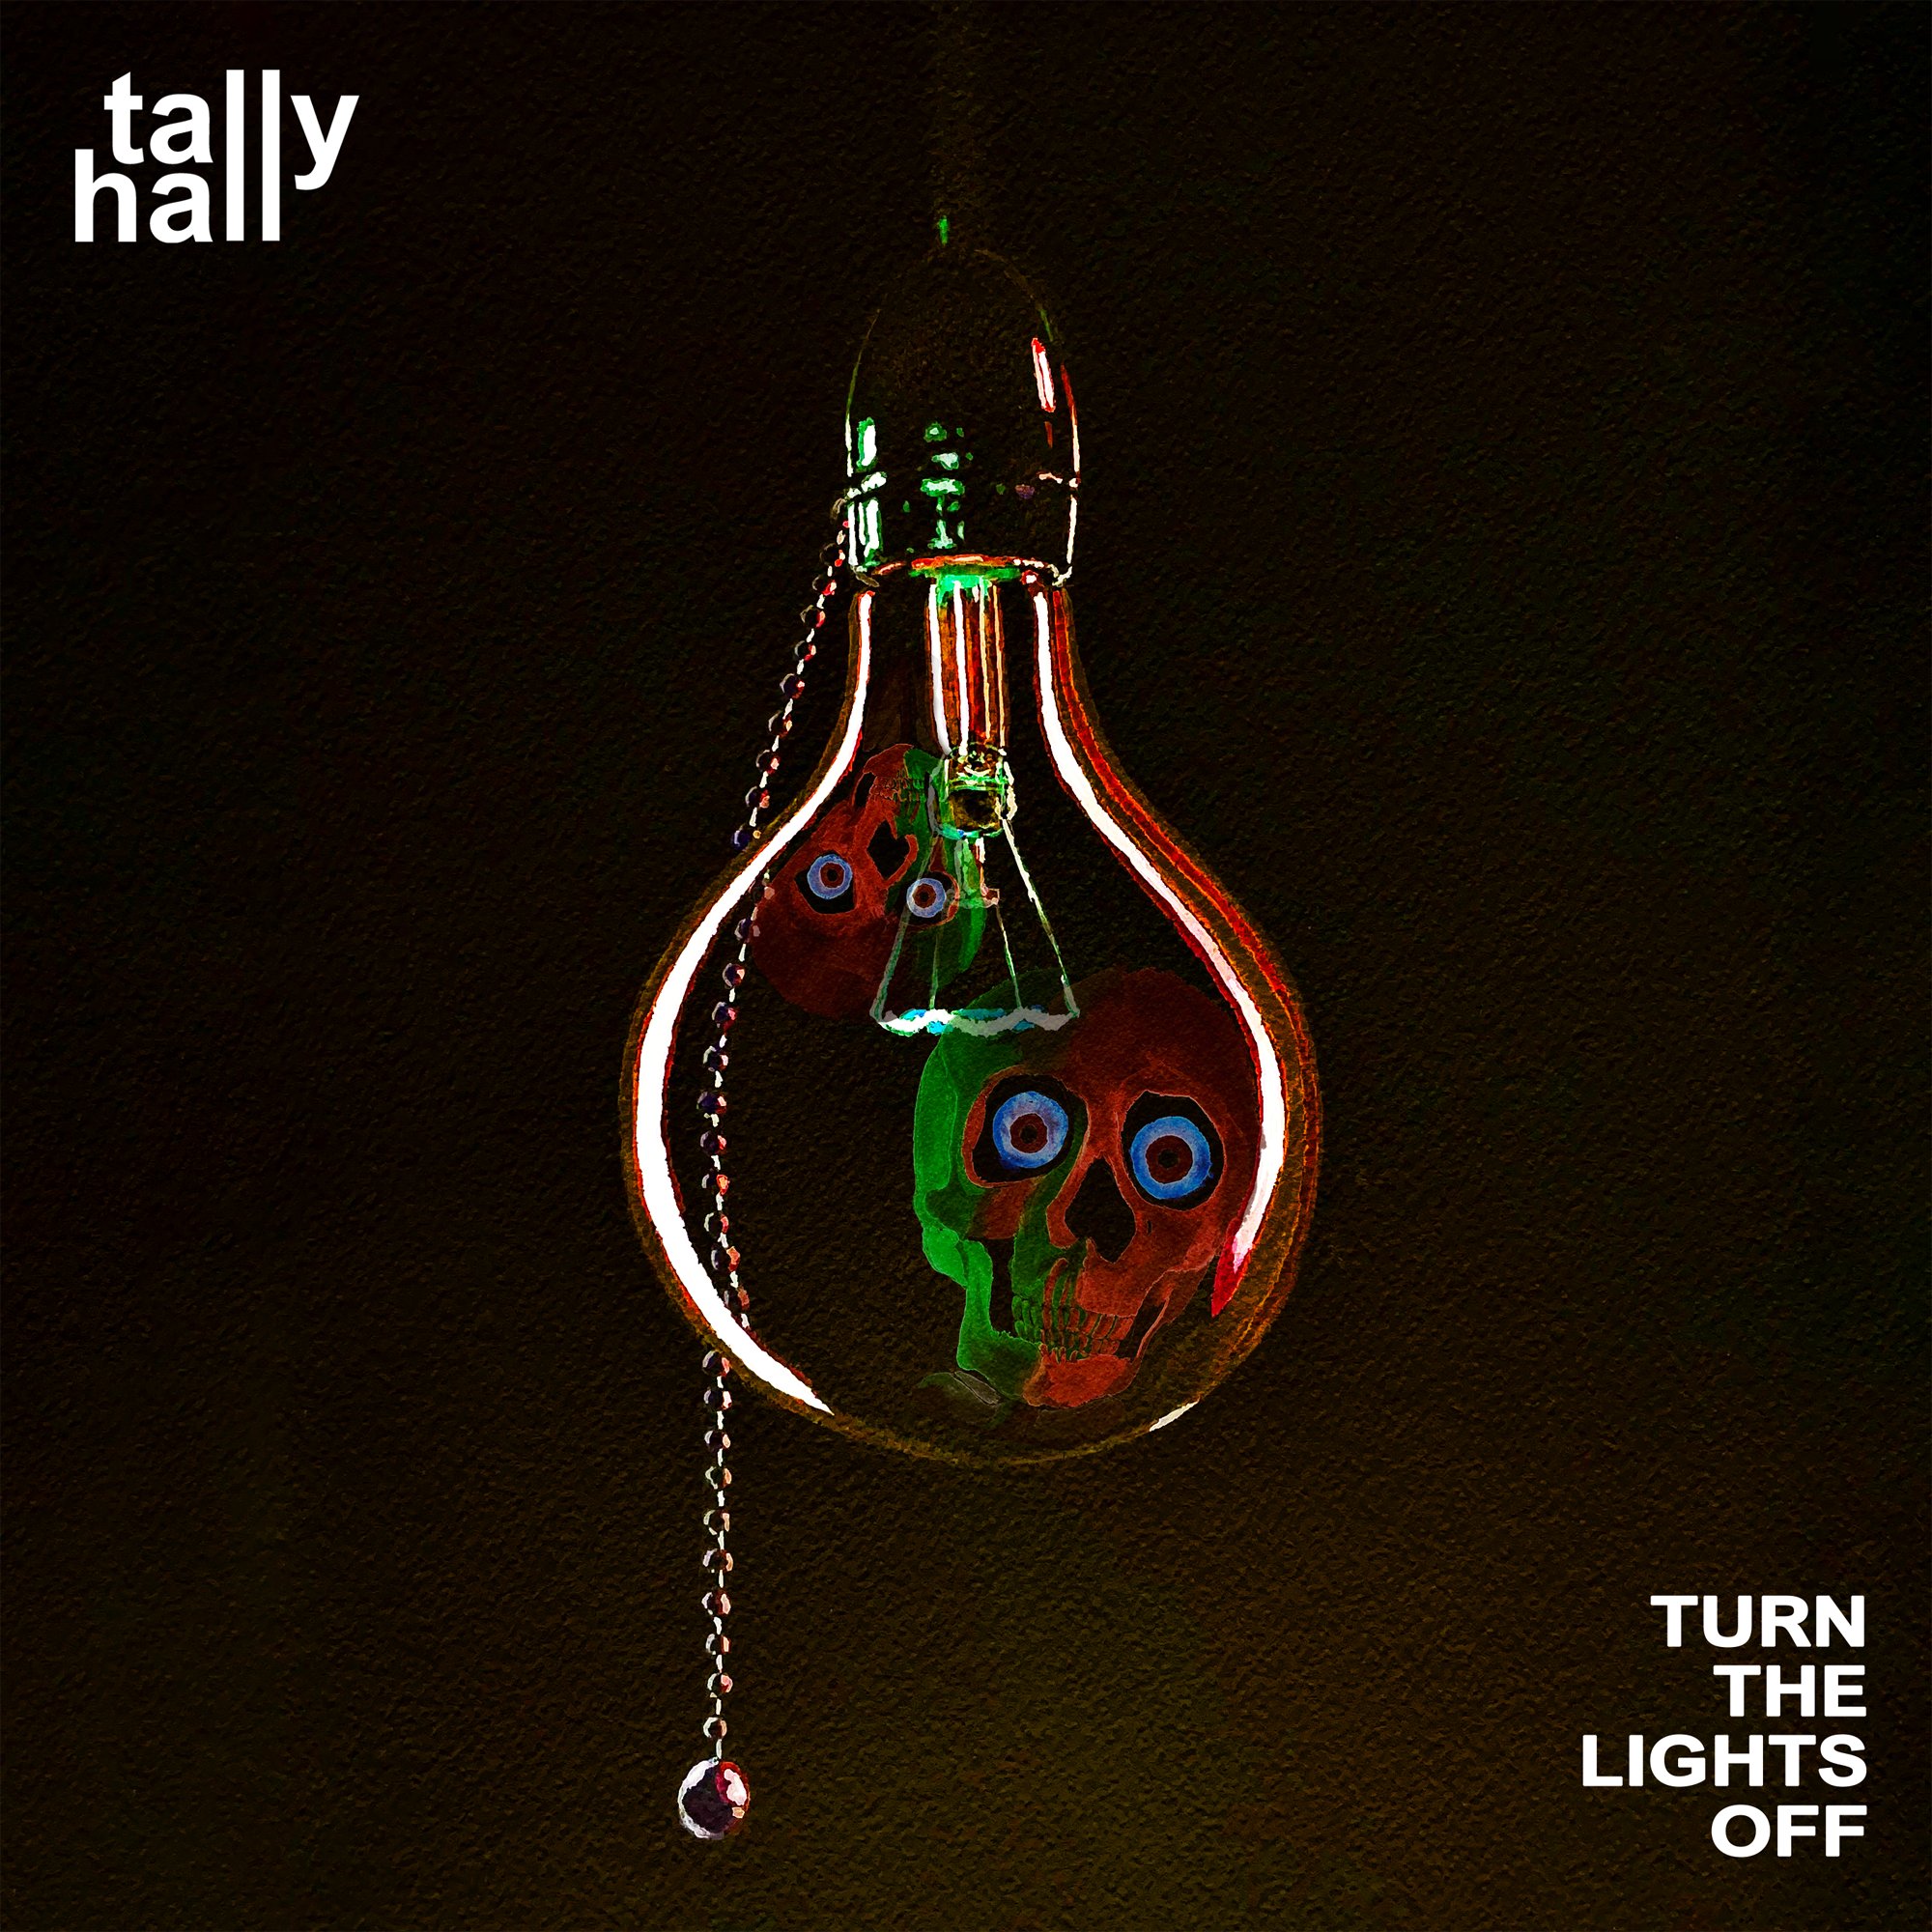 Tally hall hidden. Tally Hall. Turn off the Lights. Tally Hall turn the. Turn the Lights off обложка песни Tally Hall.